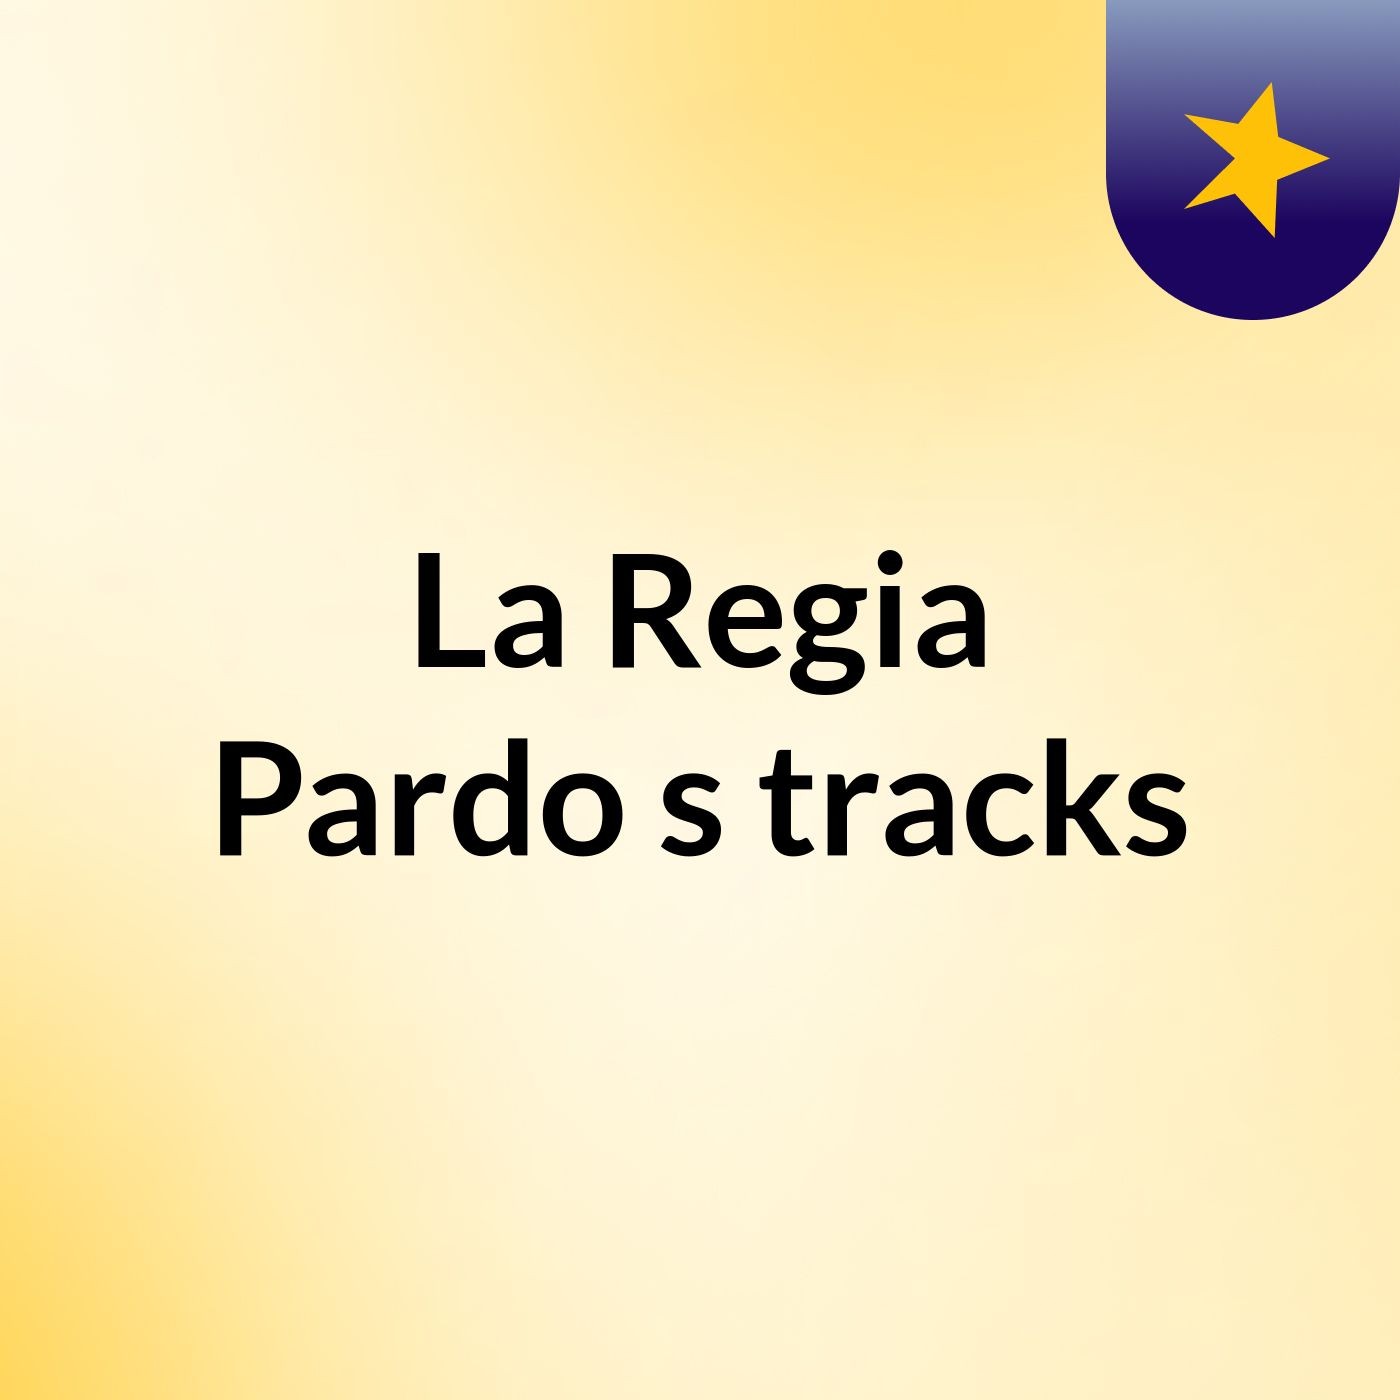 La Regia Pardo's tracks